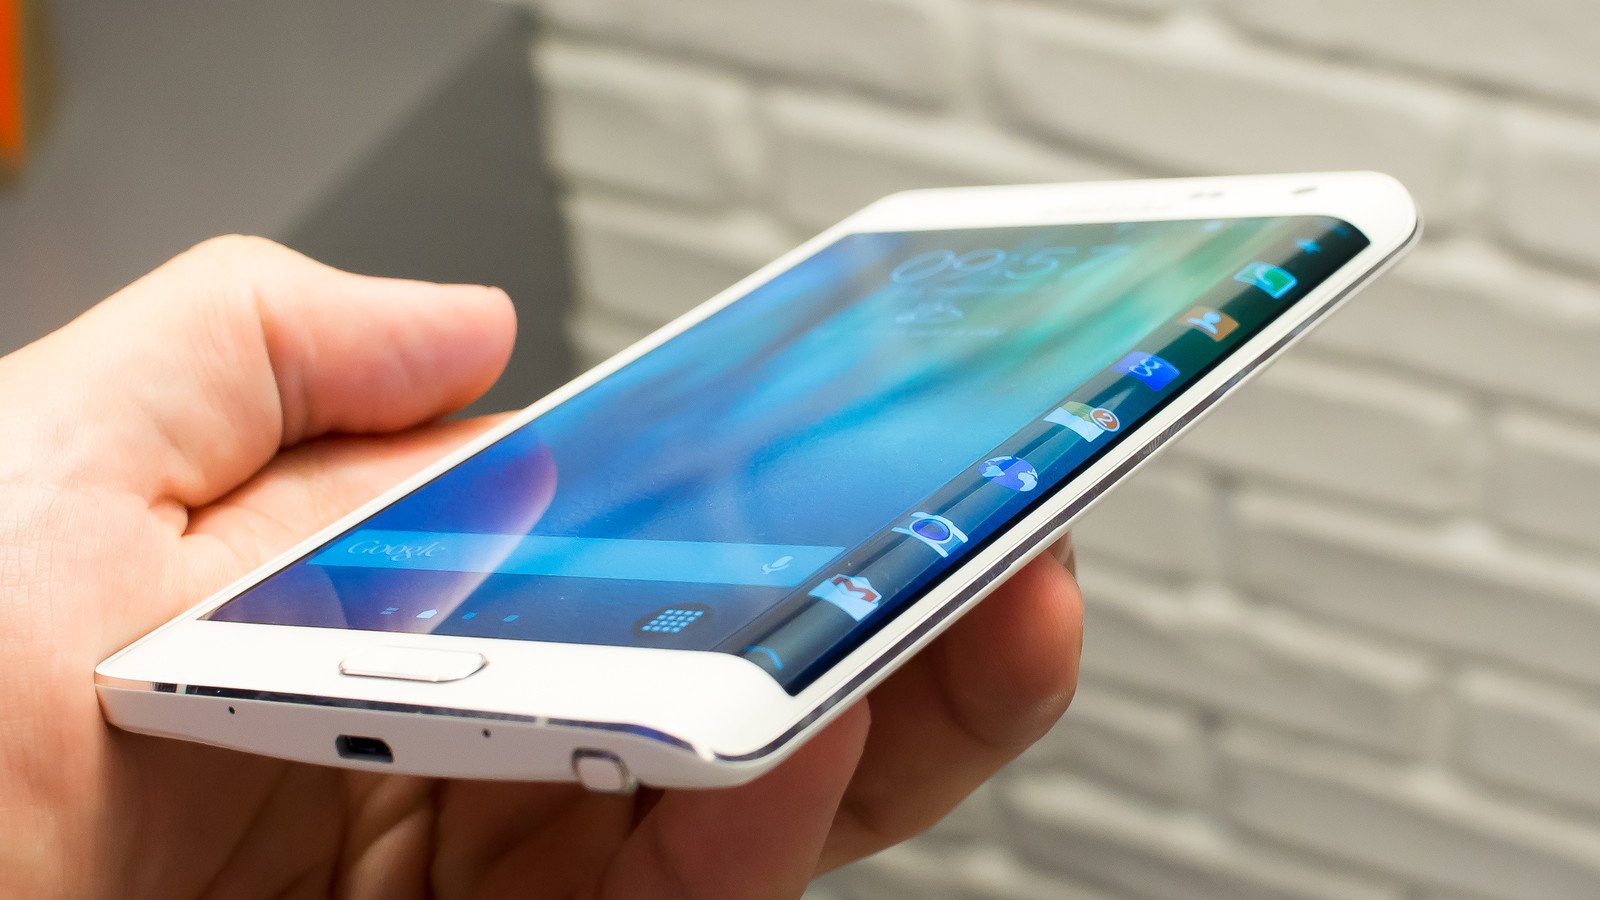 دانلود فایل ریکاوری(twrp ) سامسونگ  Samsung Galaxy Note Edge  با ورژن 2.8.7.0 با لینک مستقیم